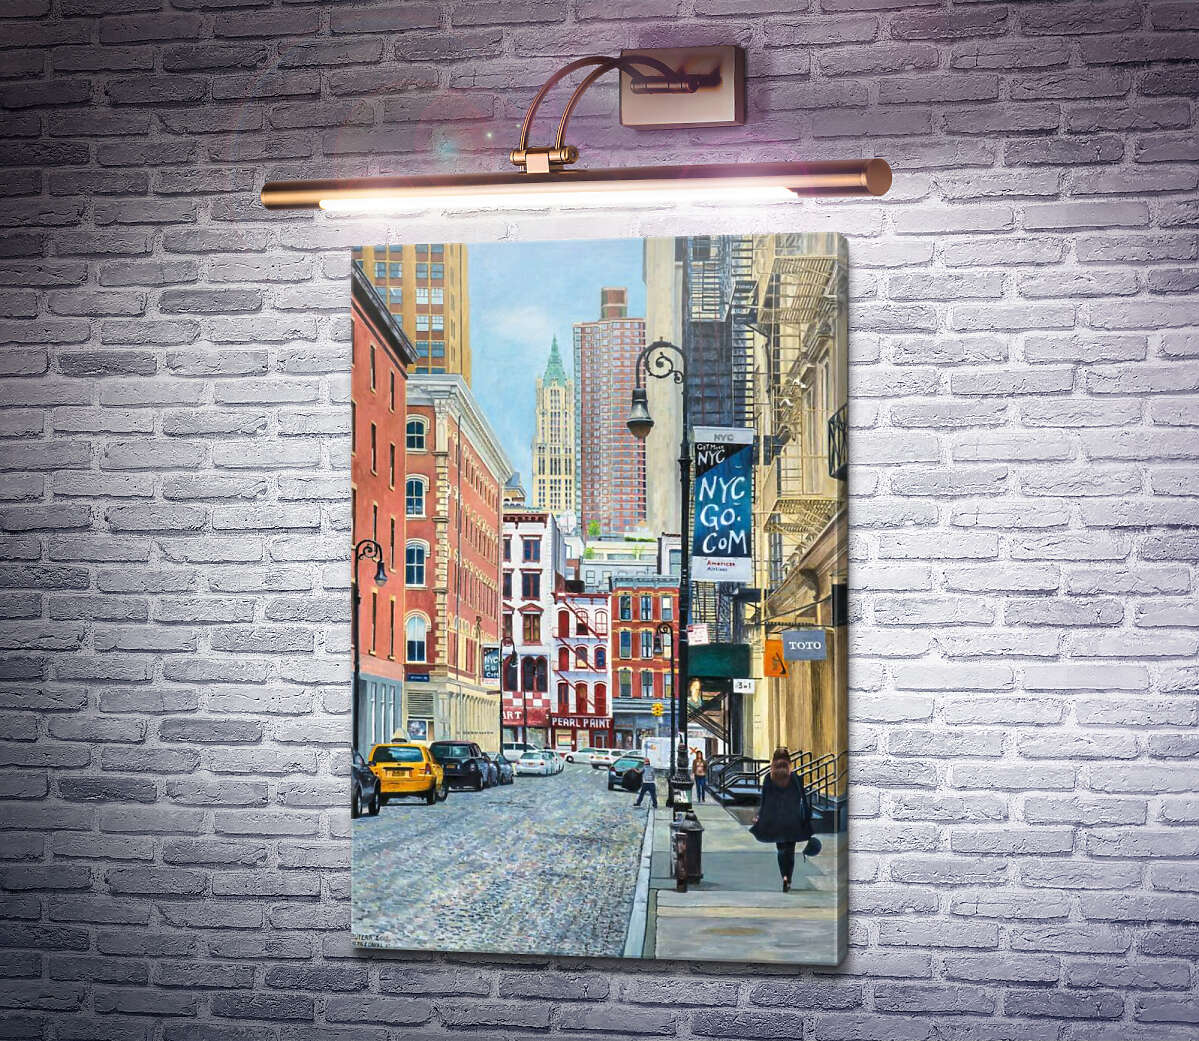 Картина "Перл Пейнт" на Канал-Стріт, Нью-Йорк Ентоні Бутера